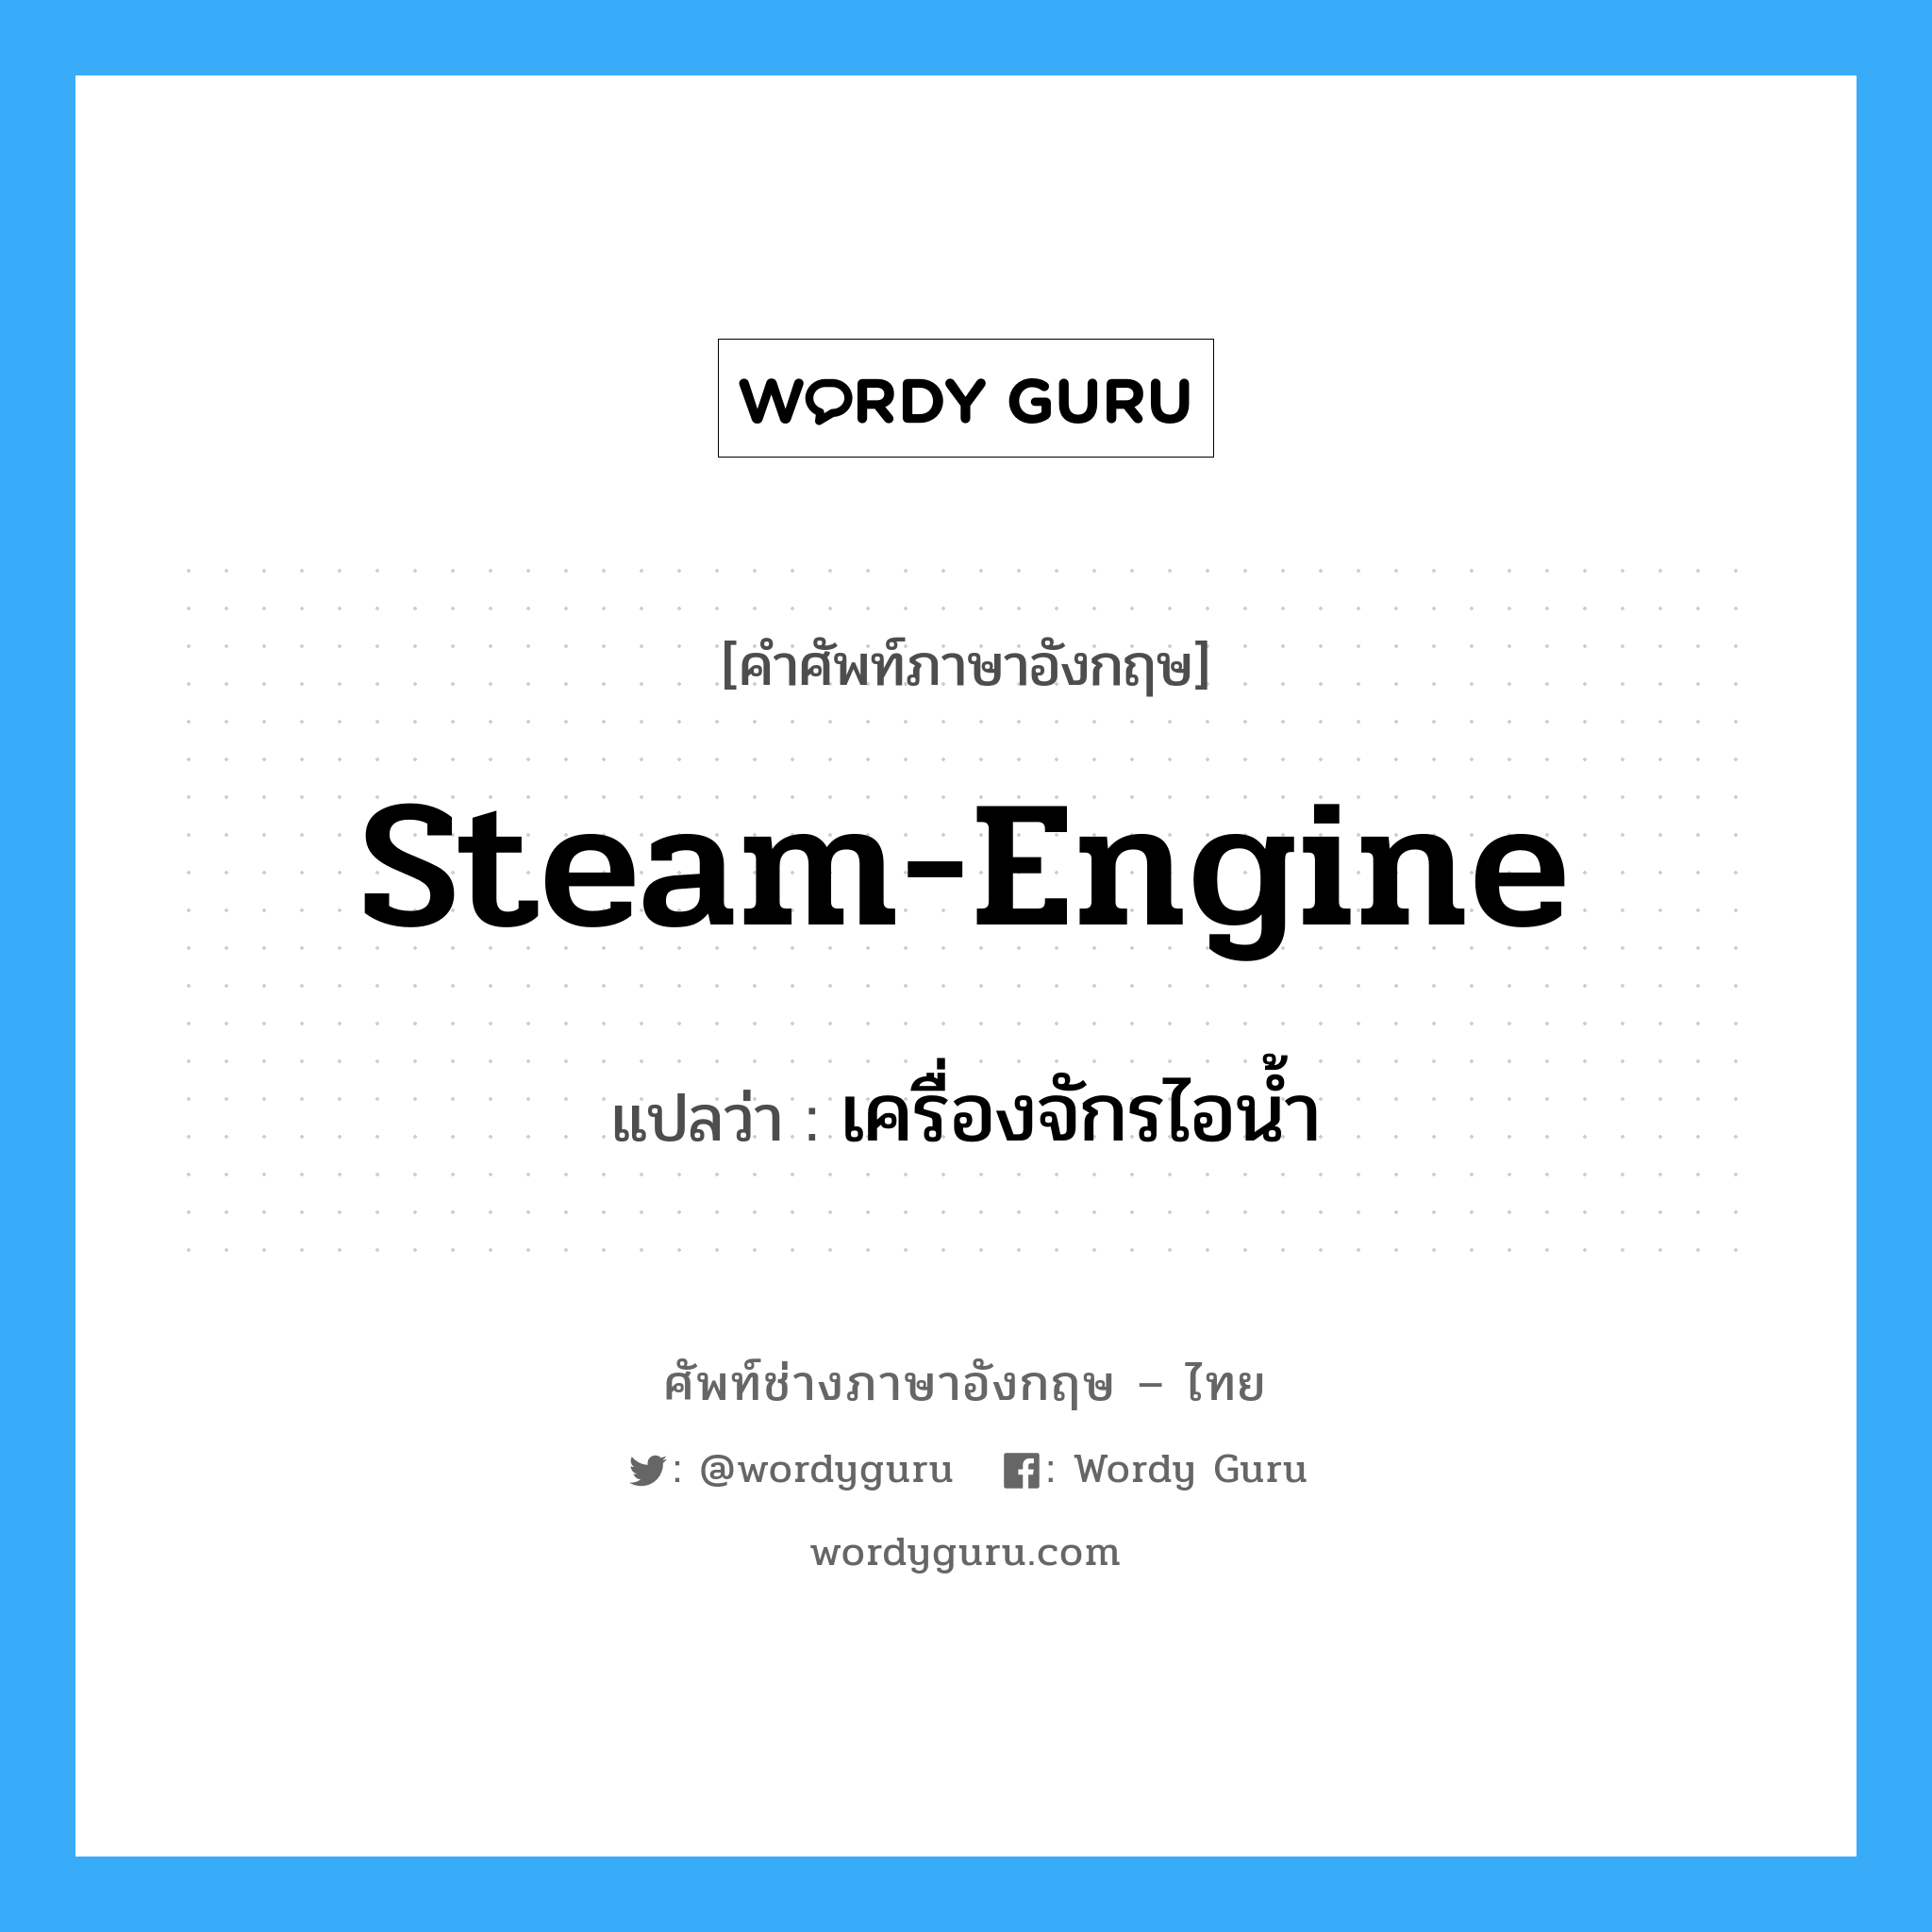 steam-engine แปลว่า?, คำศัพท์ช่างภาษาอังกฤษ - ไทย steam-engine คำศัพท์ภาษาอังกฤษ steam-engine แปลว่า เครื่องจักรไอน้ำ